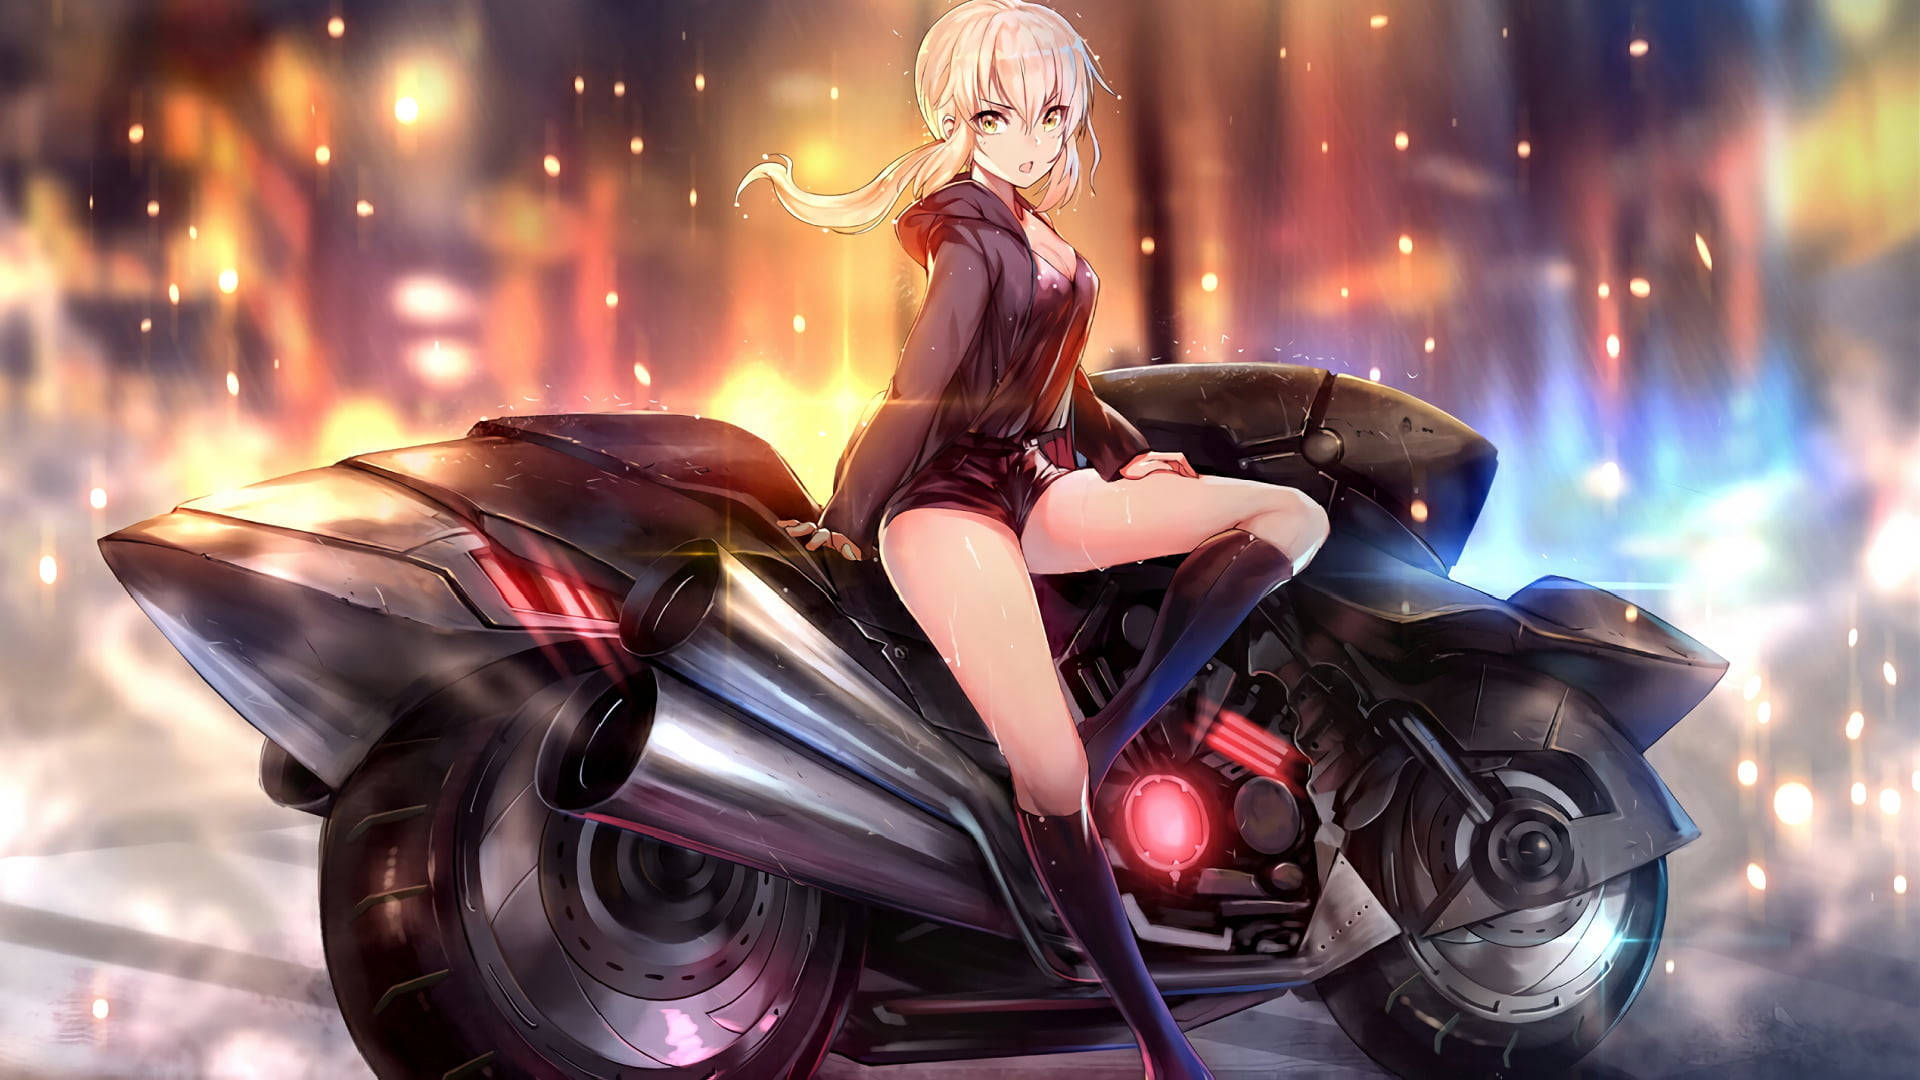 Kvinnori Het Anime På Motorcykel Wallpaper